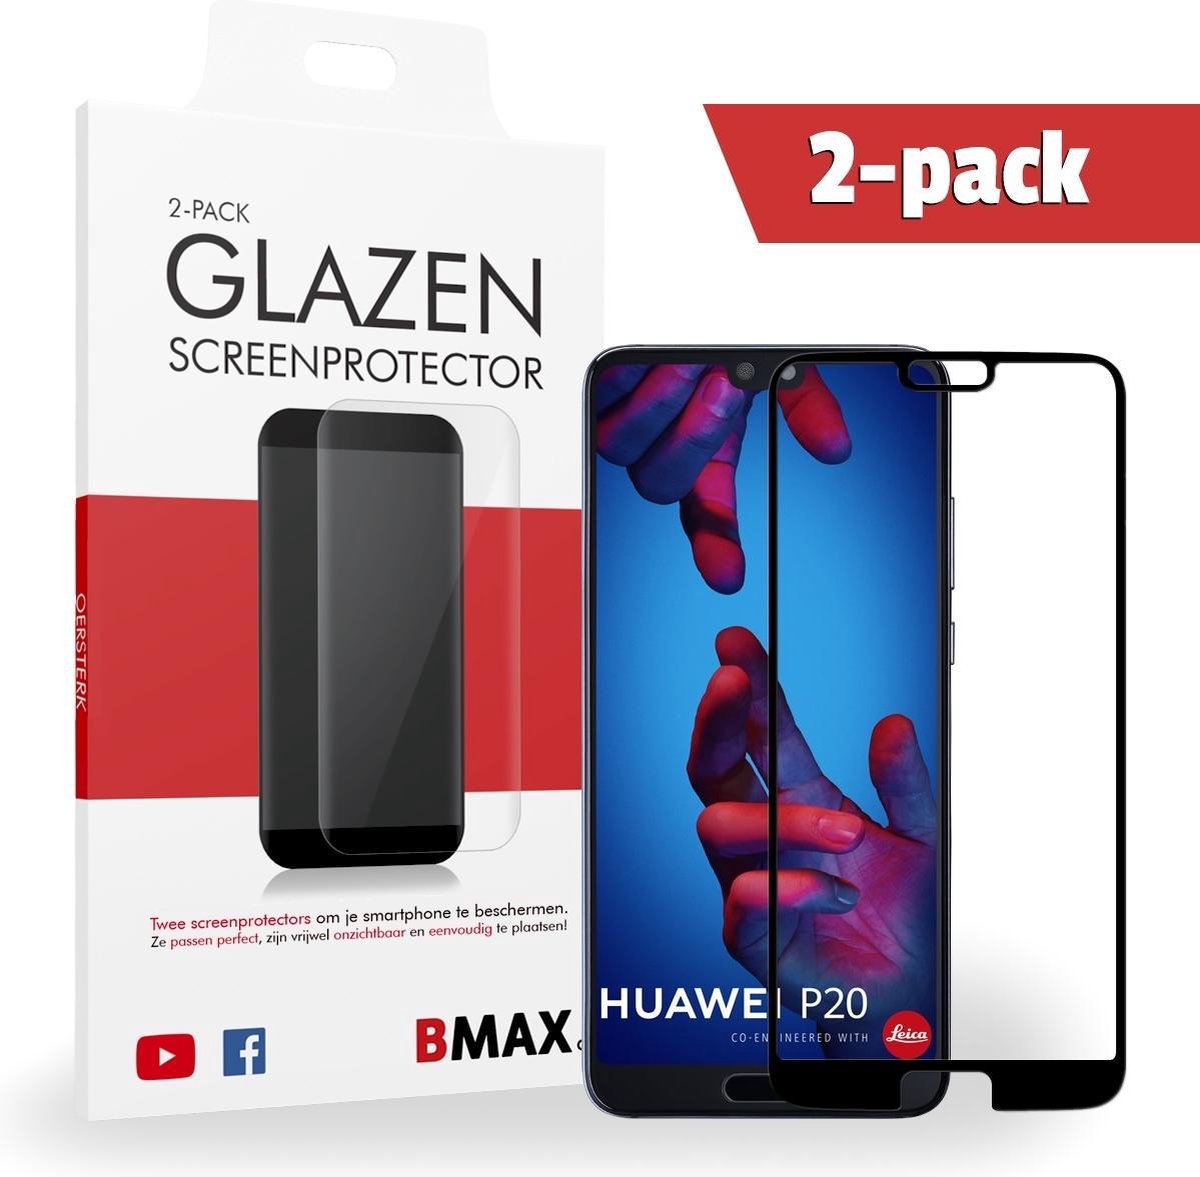 2-pack Bmax Huawei P20 Screenprotector - Glass - Full Cover 5d - Black